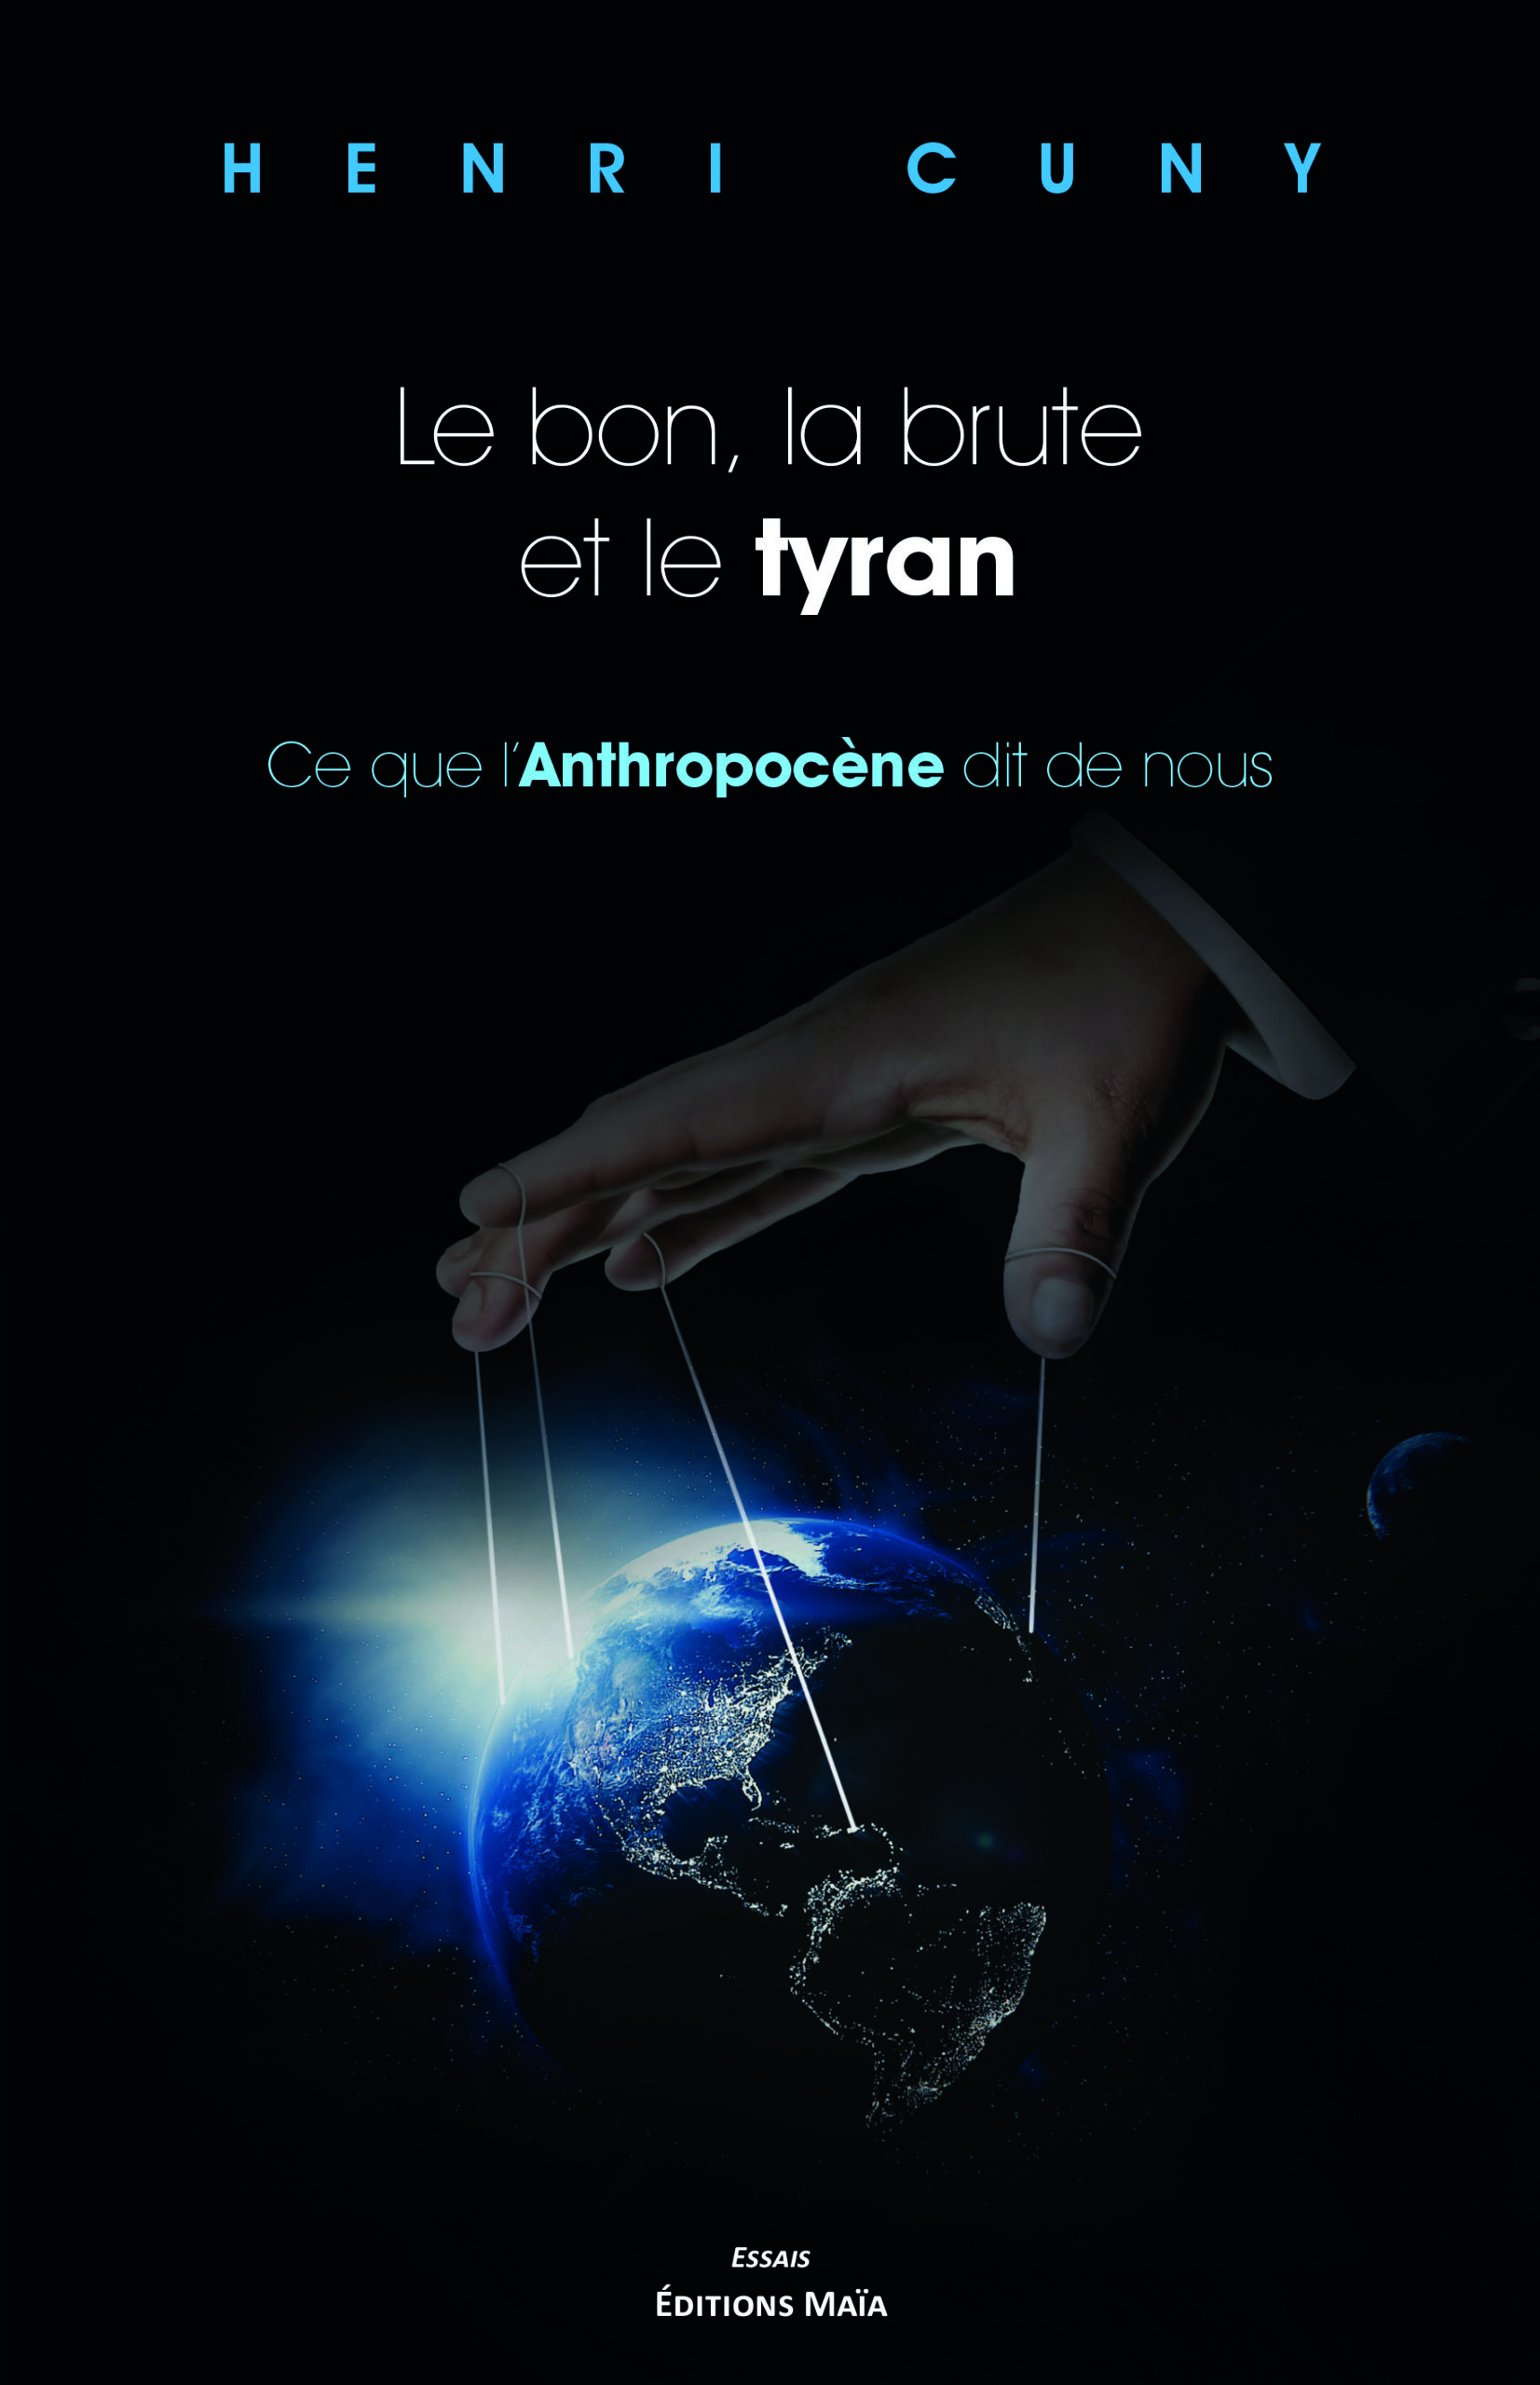 Couverture du livre d'Henri Cuny, "Le bon, la brute et le tyran  - Ce que l’Anthropocène dit de nous".